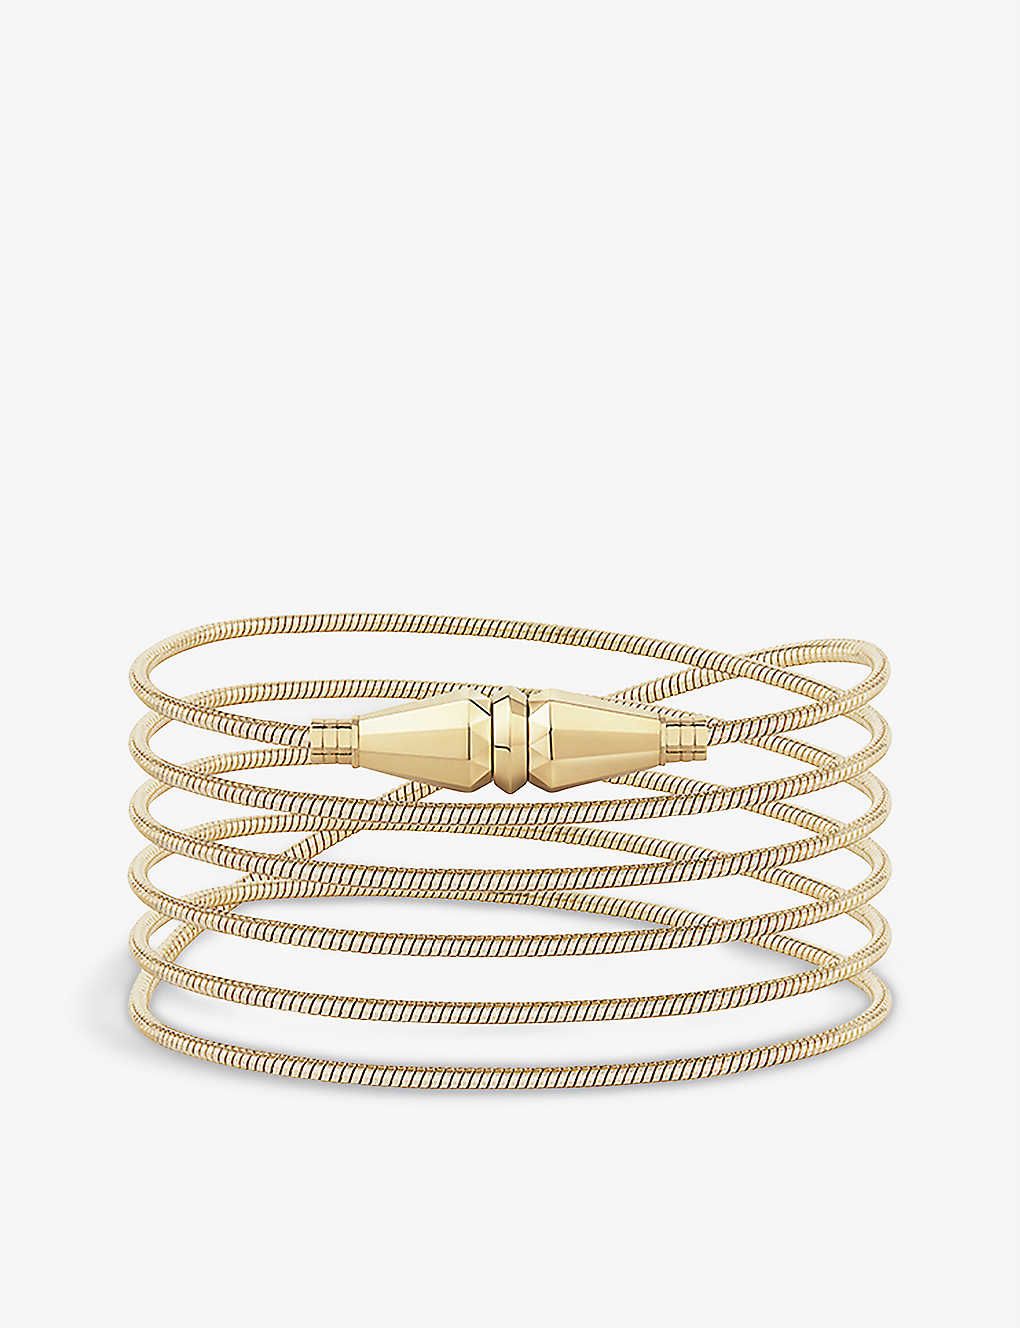 Diamond Bracelets | Fine Jewelry Designed By Martin Katz